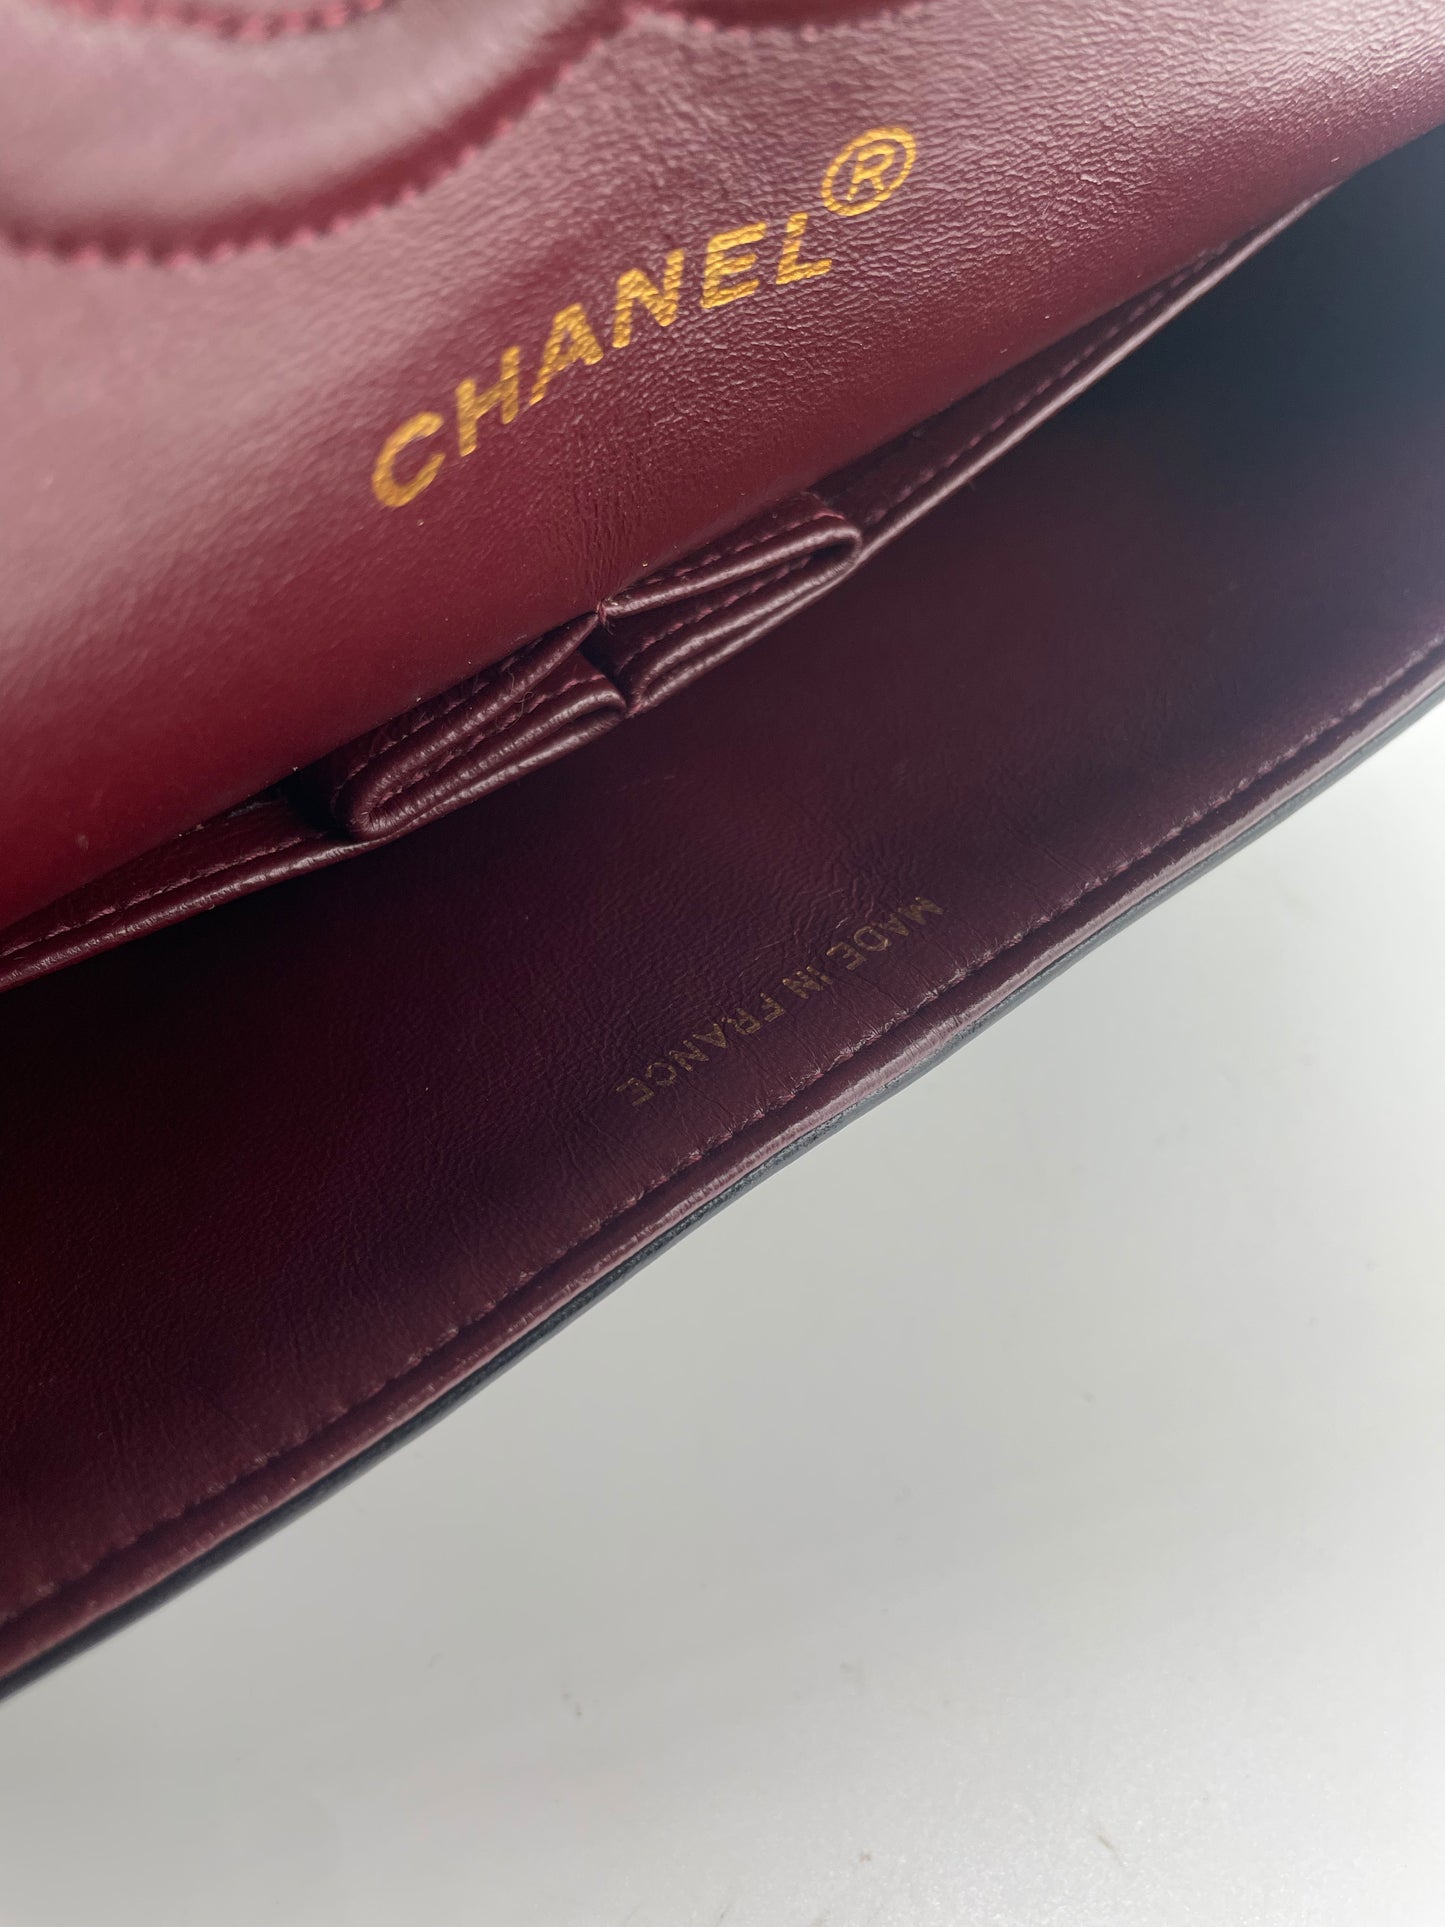 Sac à main Chanel Classique en cuir d'agneau noir et métal doré plaqué 24 carat.